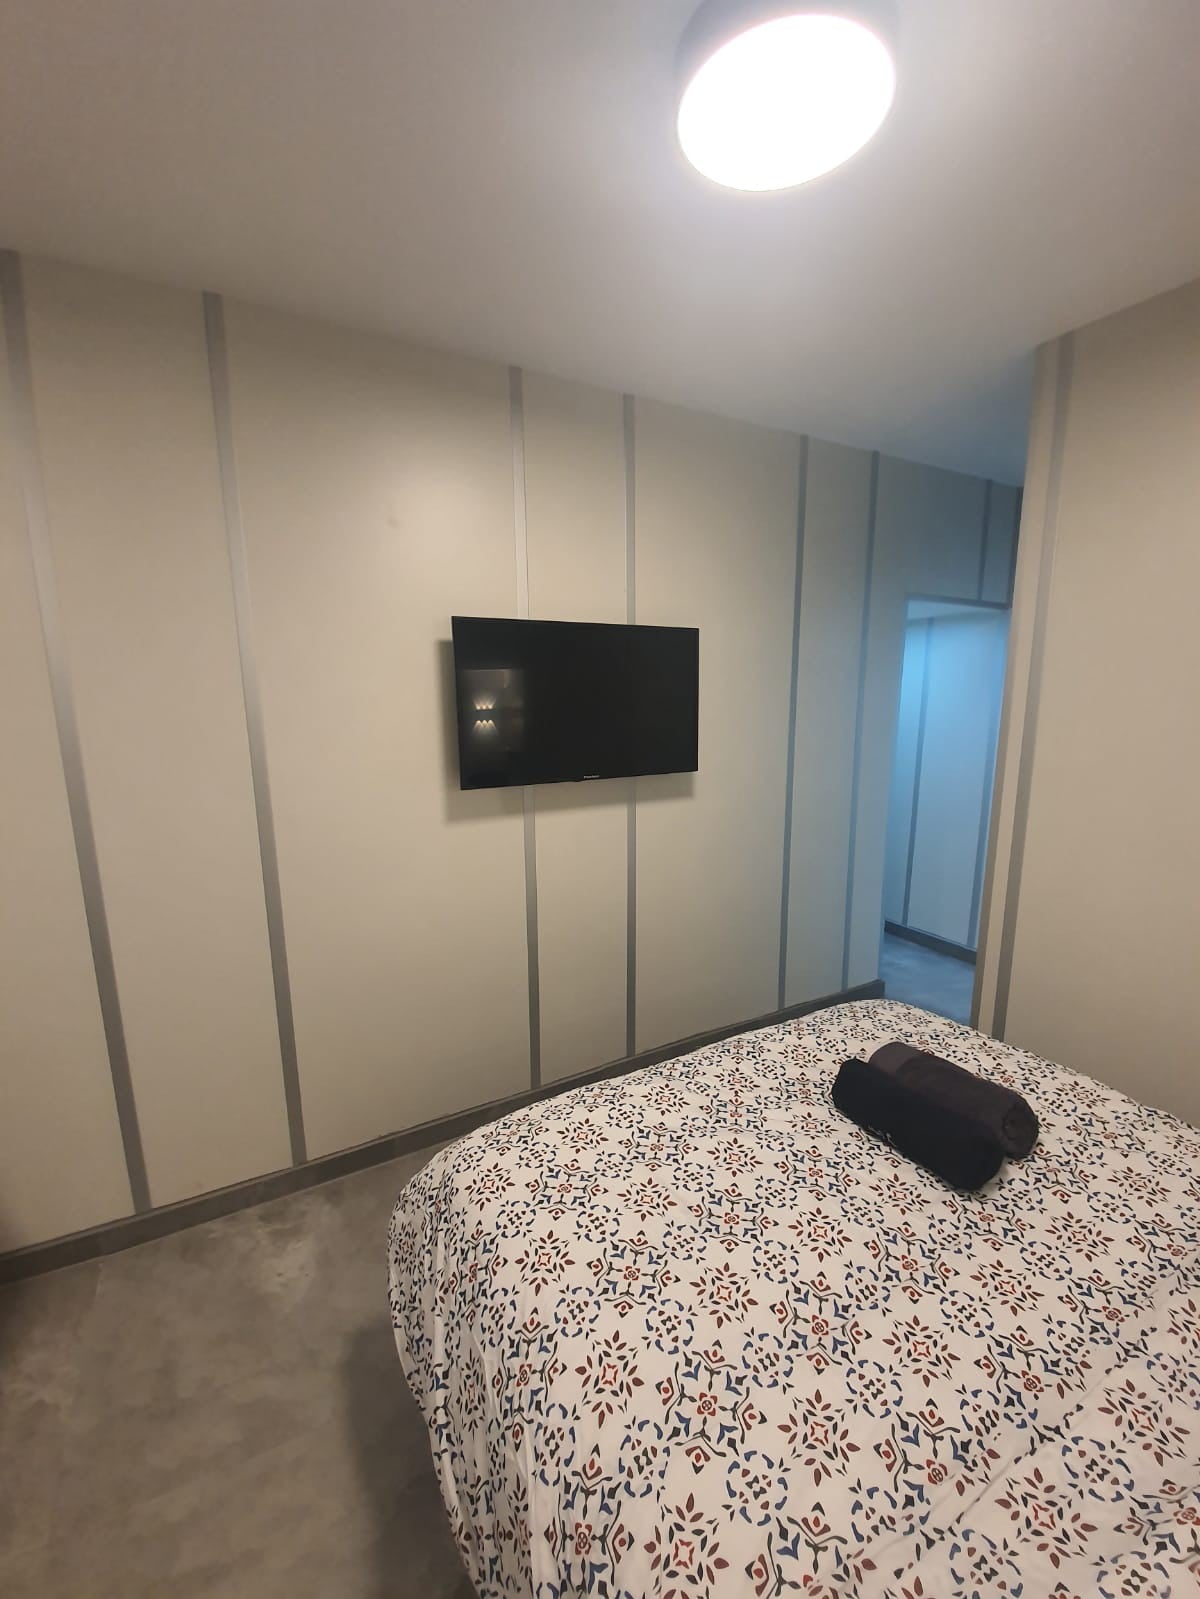 （ Ryo 8 ）酒店级单间公寓- 5星级